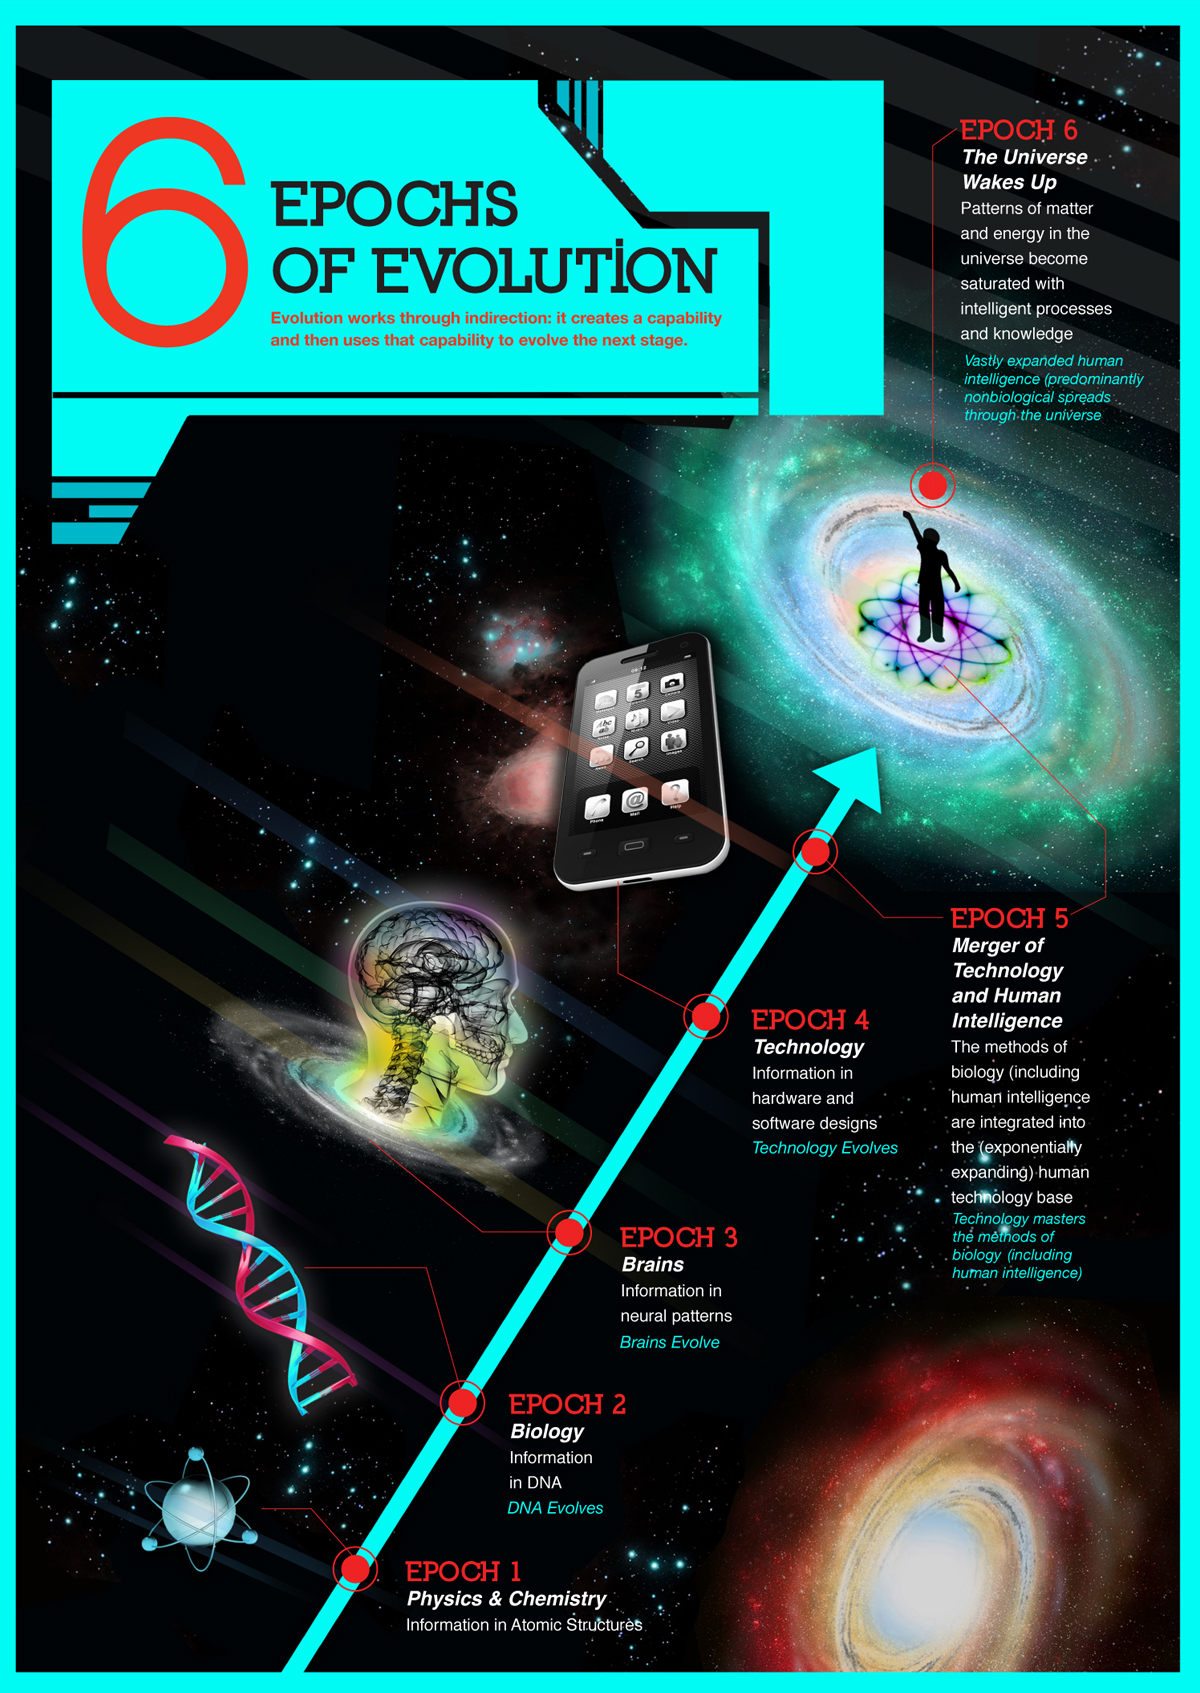 6 Epochs of Evolution, Singularity